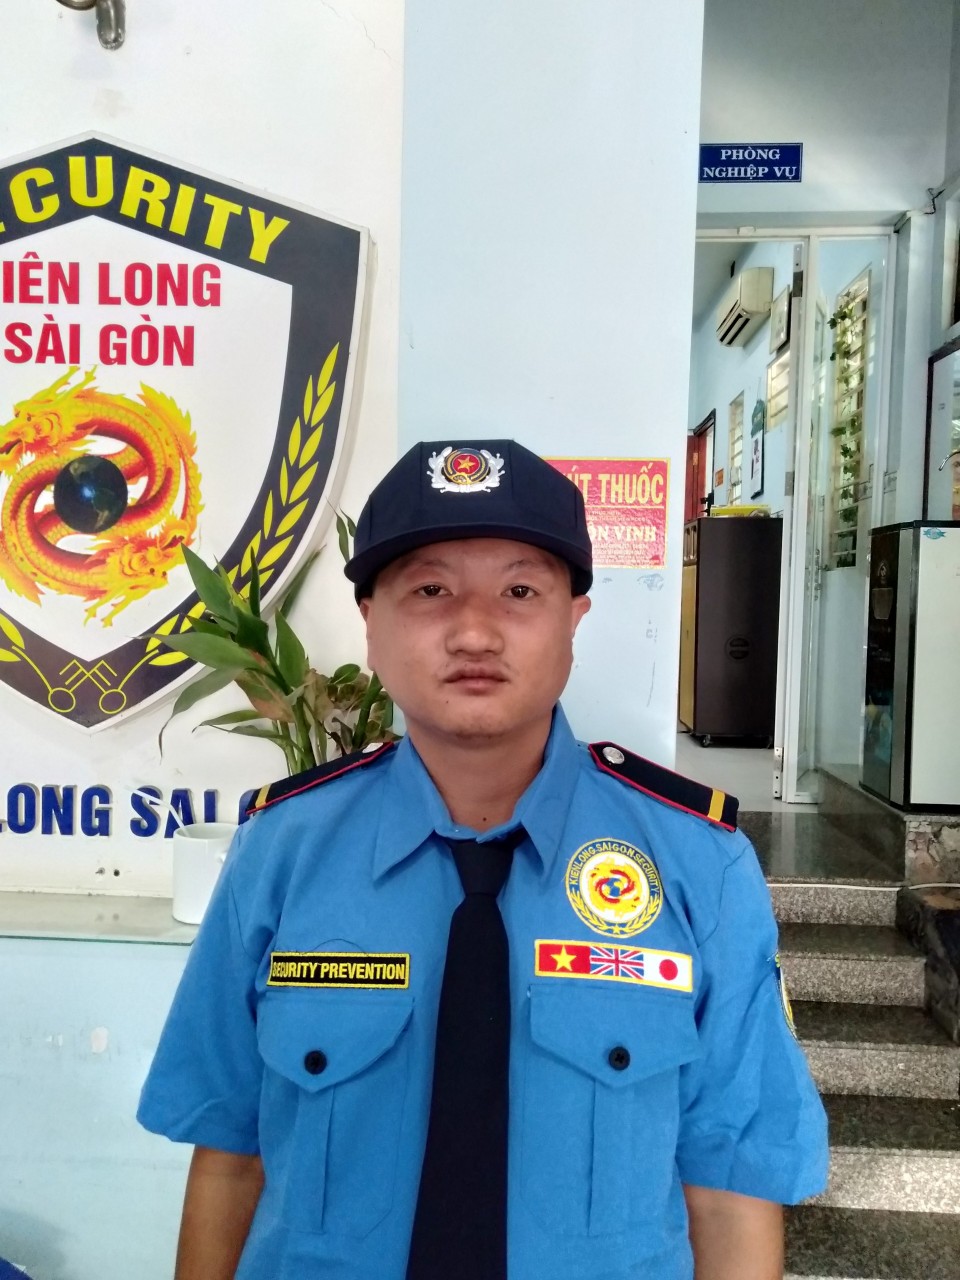 Bảo vệ Quận Phú Nhuận - Đối tác tin cậy đảm bảo an ninh cho cộng đồng